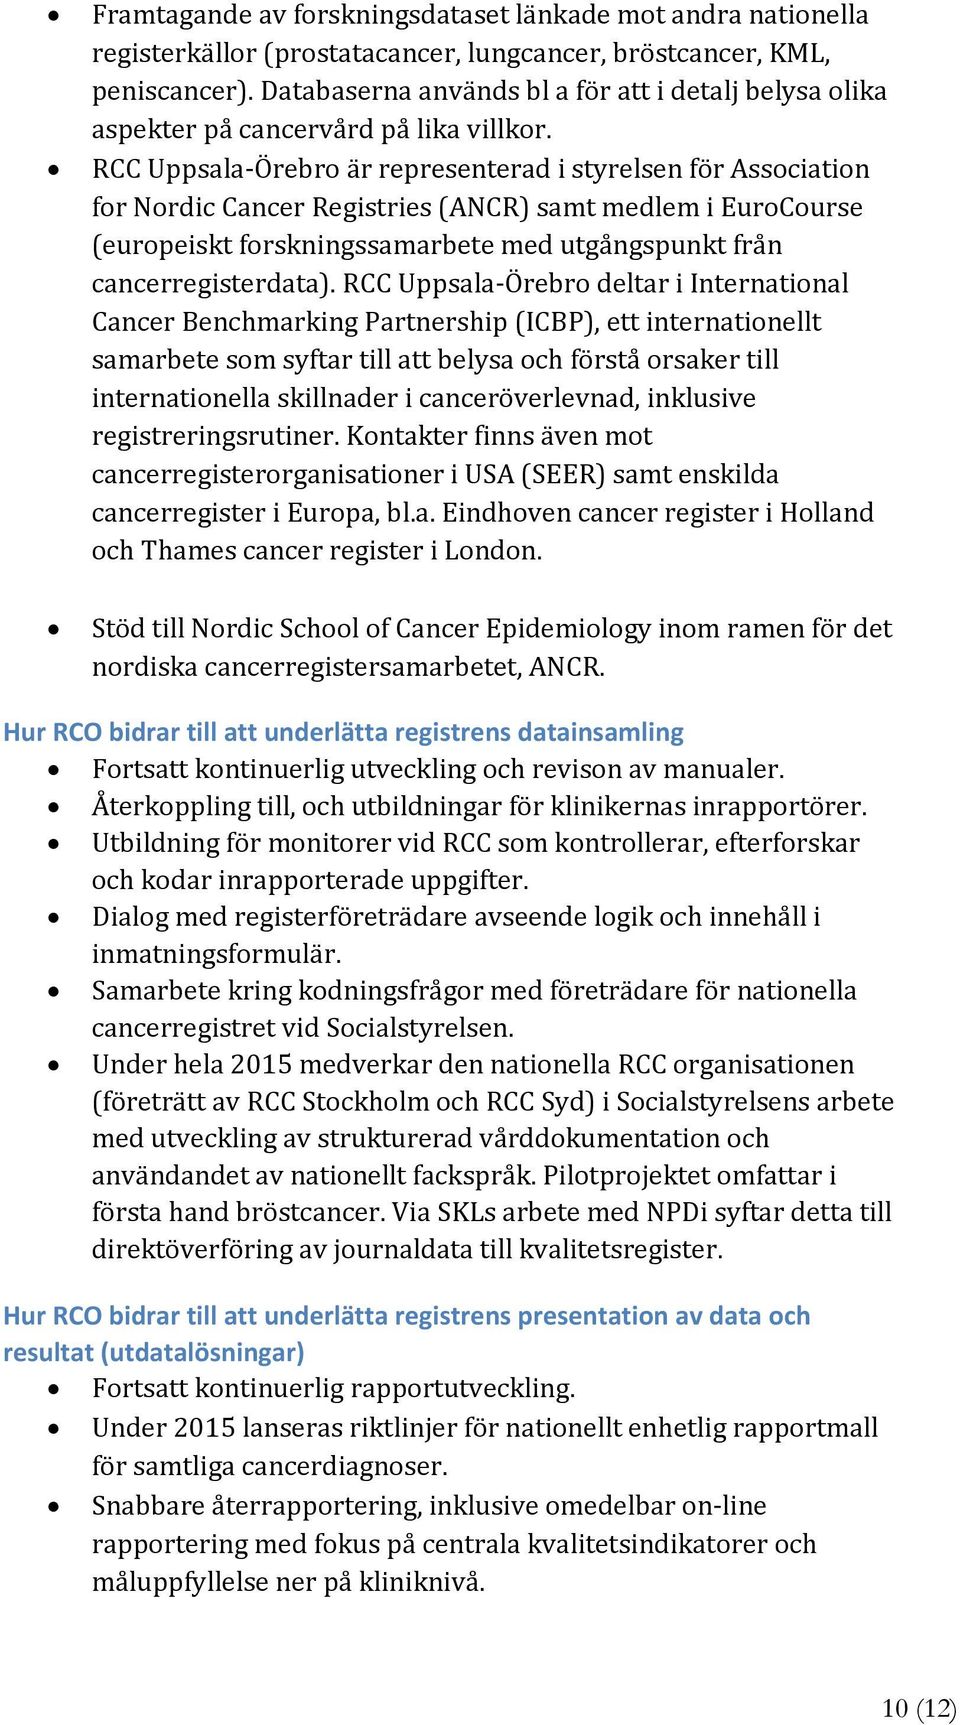 RCC Uppsala Örebro är representerad i styrelsen för Association for Nordic Cancer Registries (ANCR) samt medlem i EuroCourse (europeiskt forskningssamarbete med utgångspunkt från cancerregisterdata).